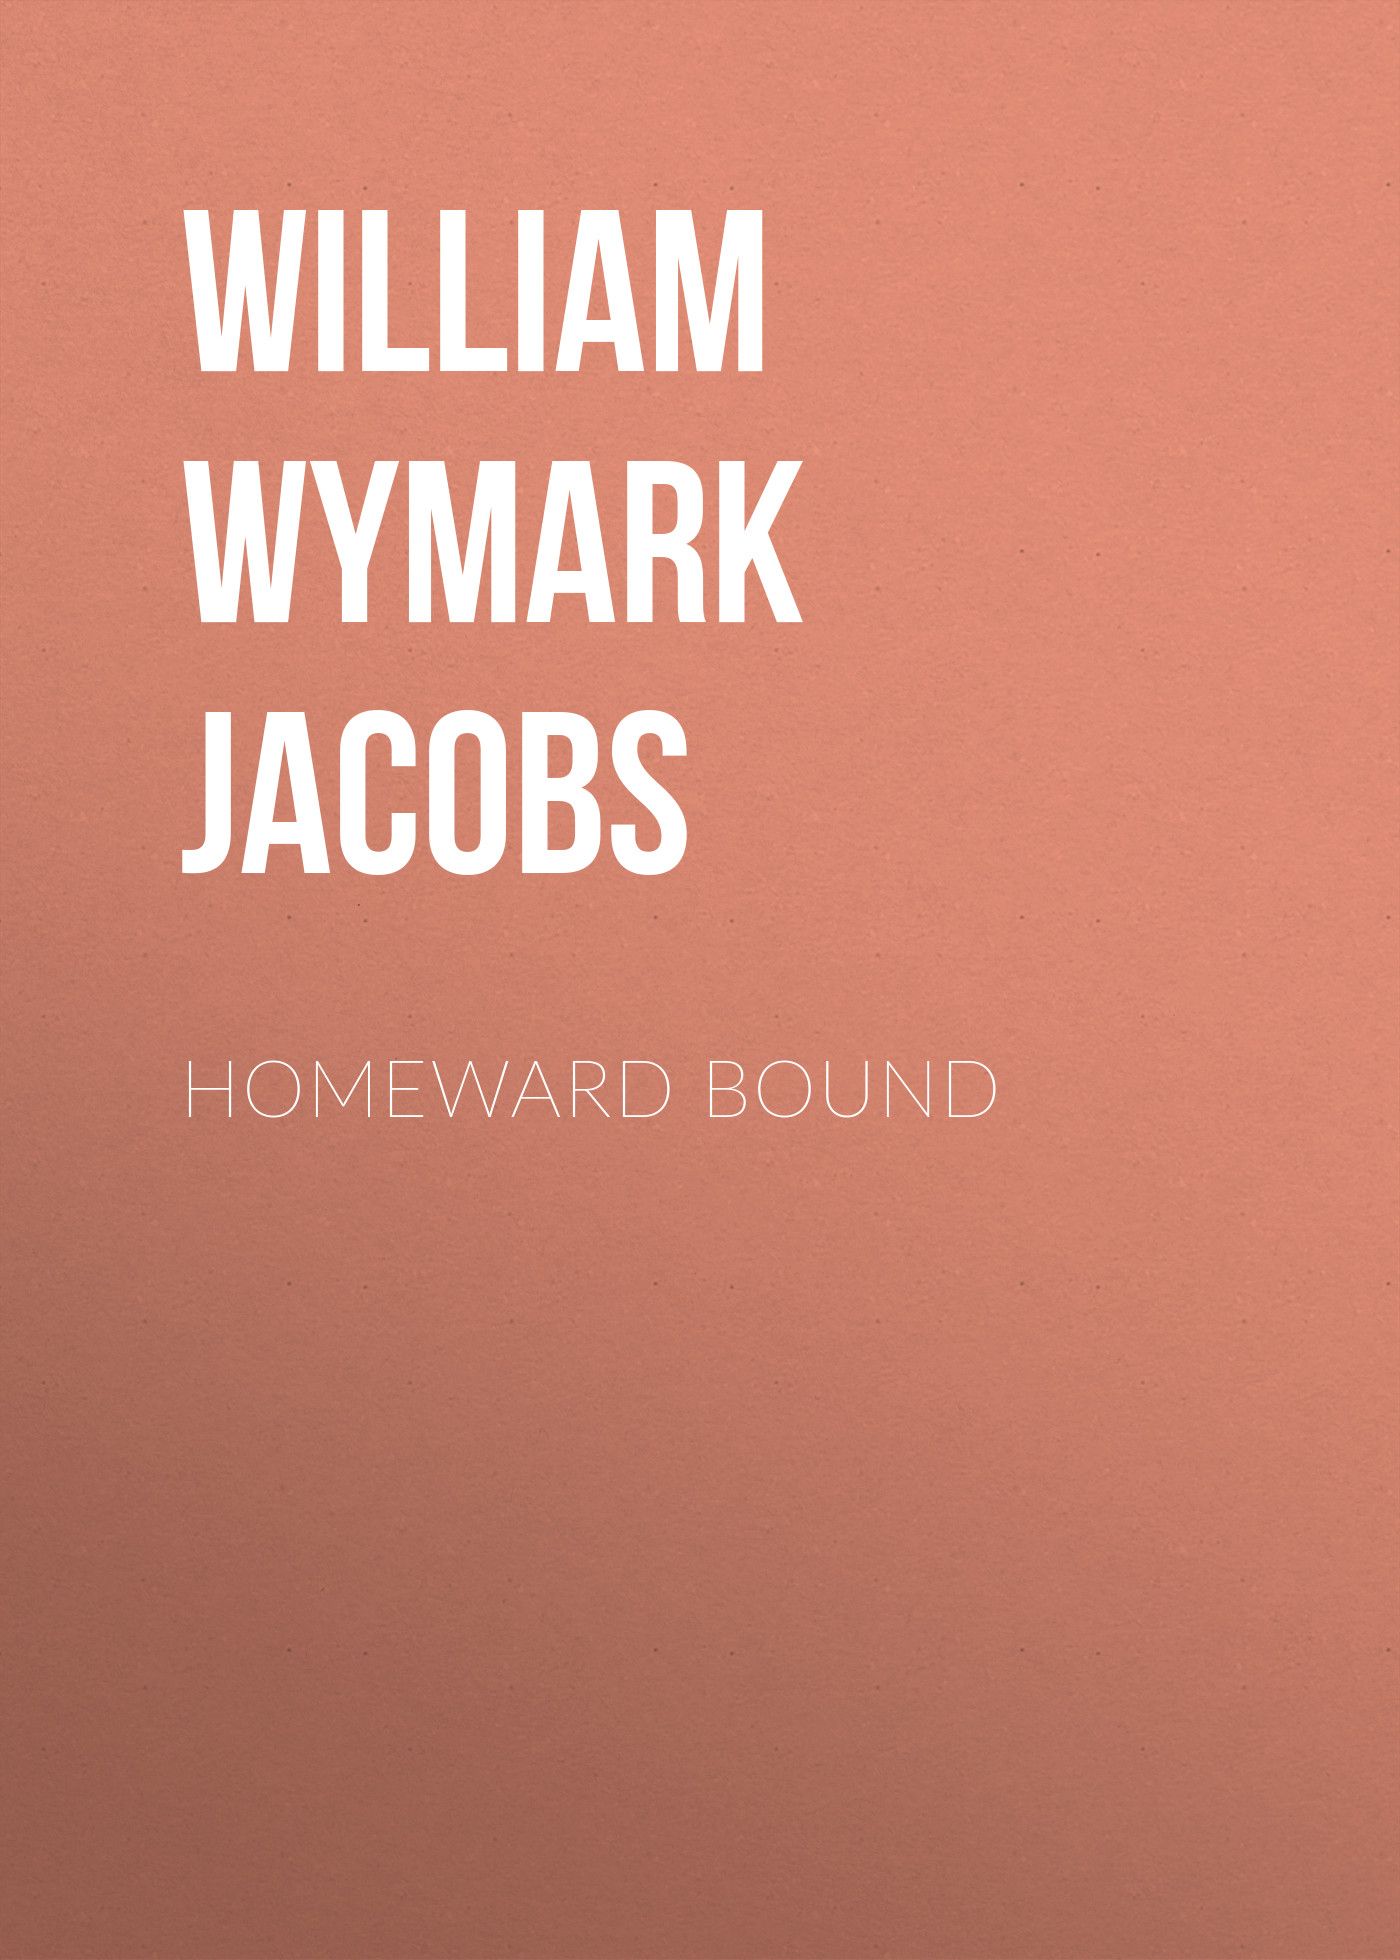 Книга Homeward Bound из серии , созданная William Wymark Jacobs, может относится к жанру Зарубежная классика, Зарубежная старинная литература. Стоимость электронной книги Homeward Bound с идентификатором 34842366 составляет 0 руб.